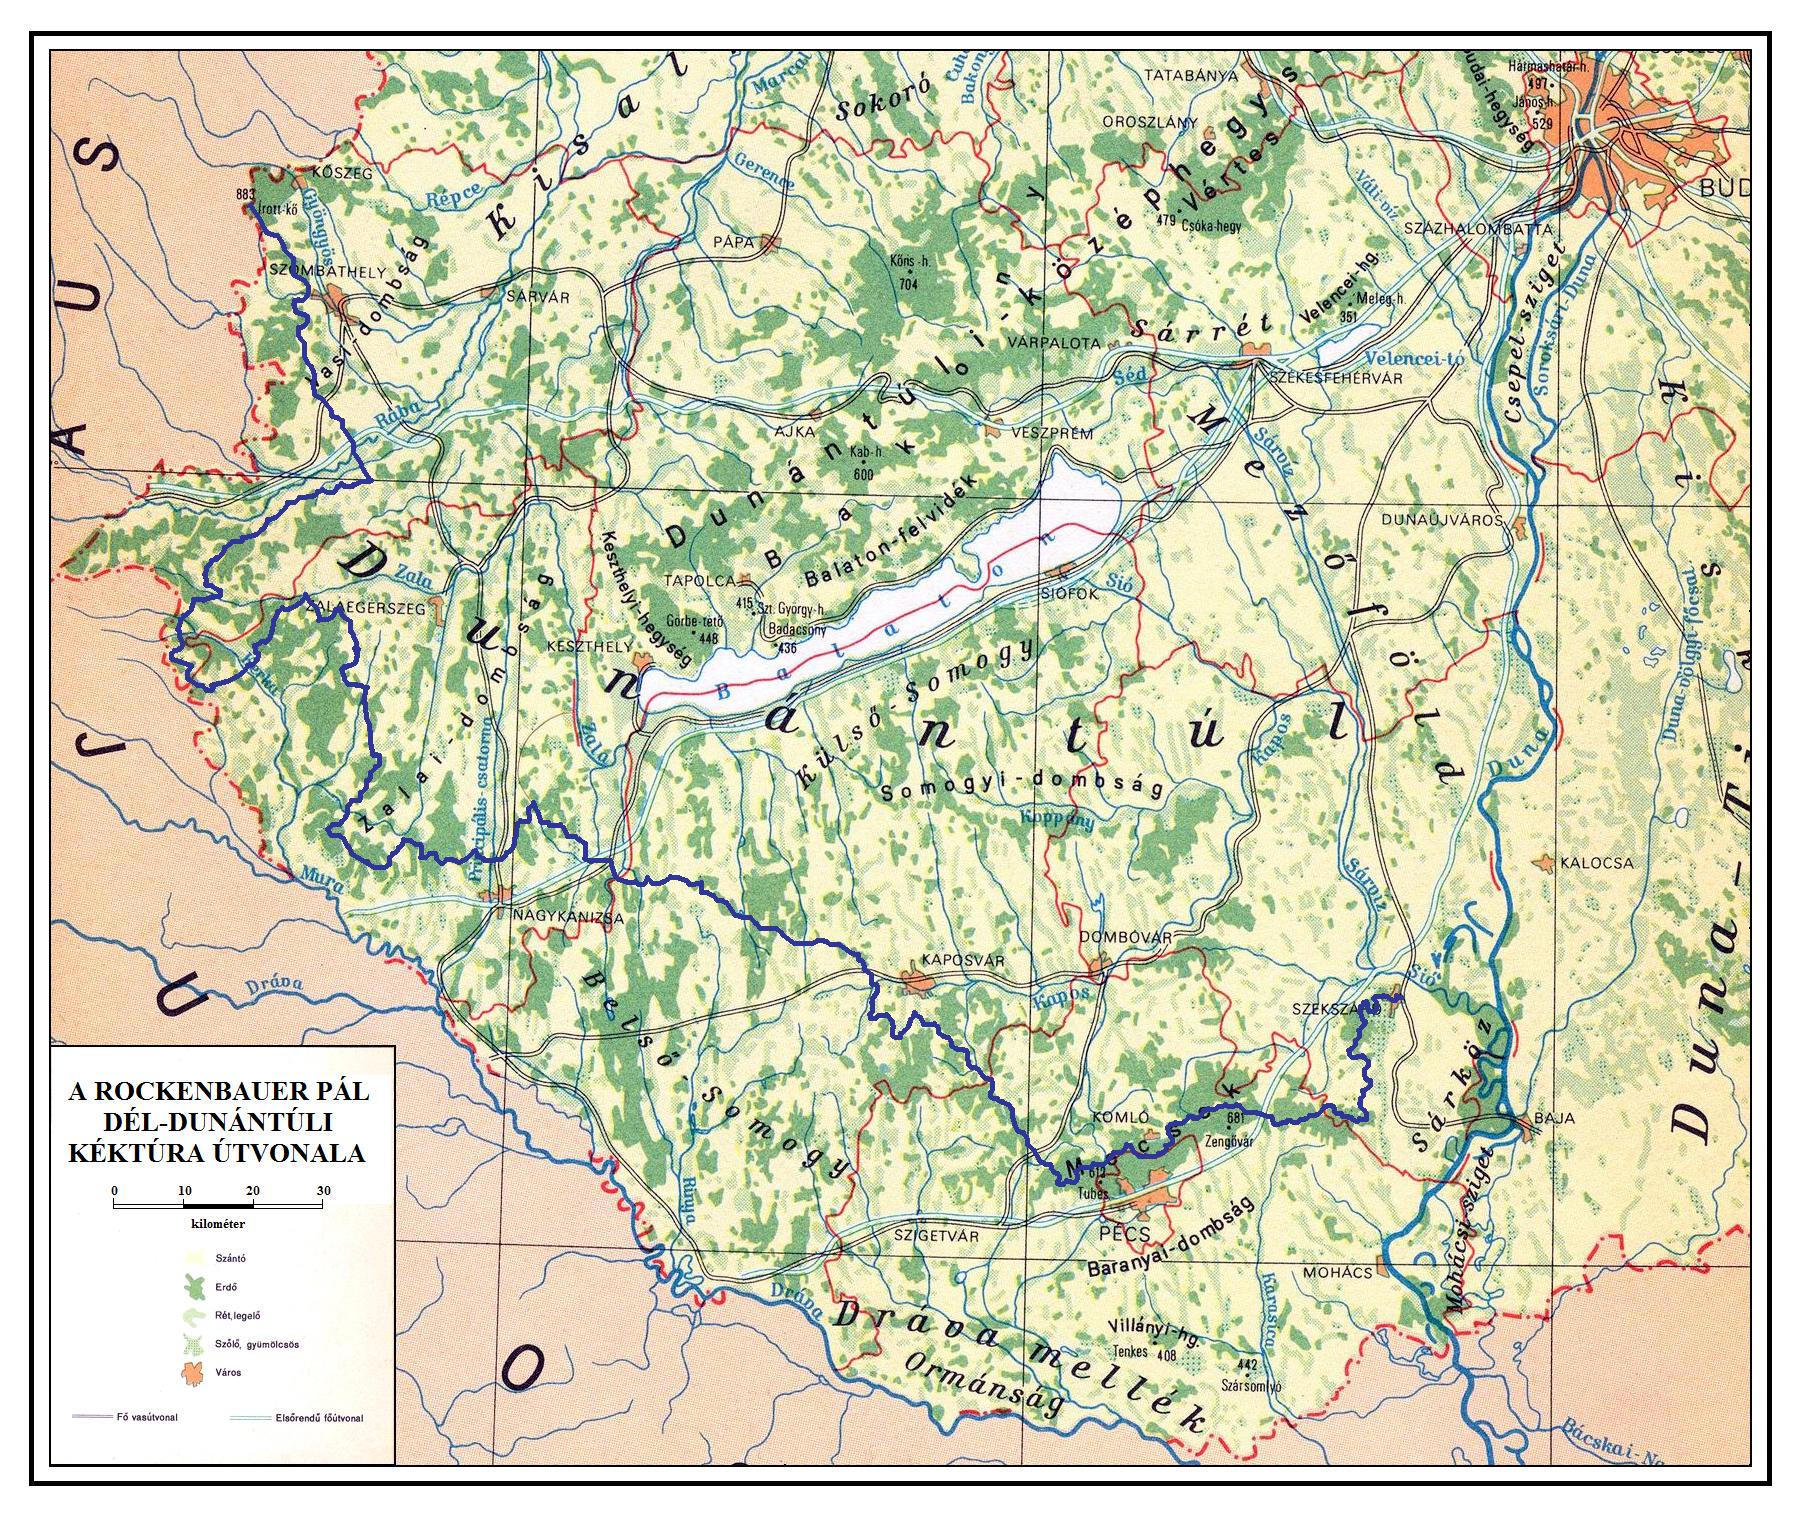 térkép dél magyarország KÉKTÚRA HONLAP   A Rockenbauer Pál Dél dunántúli Kéktúra bemutatása térkép dél magyarország